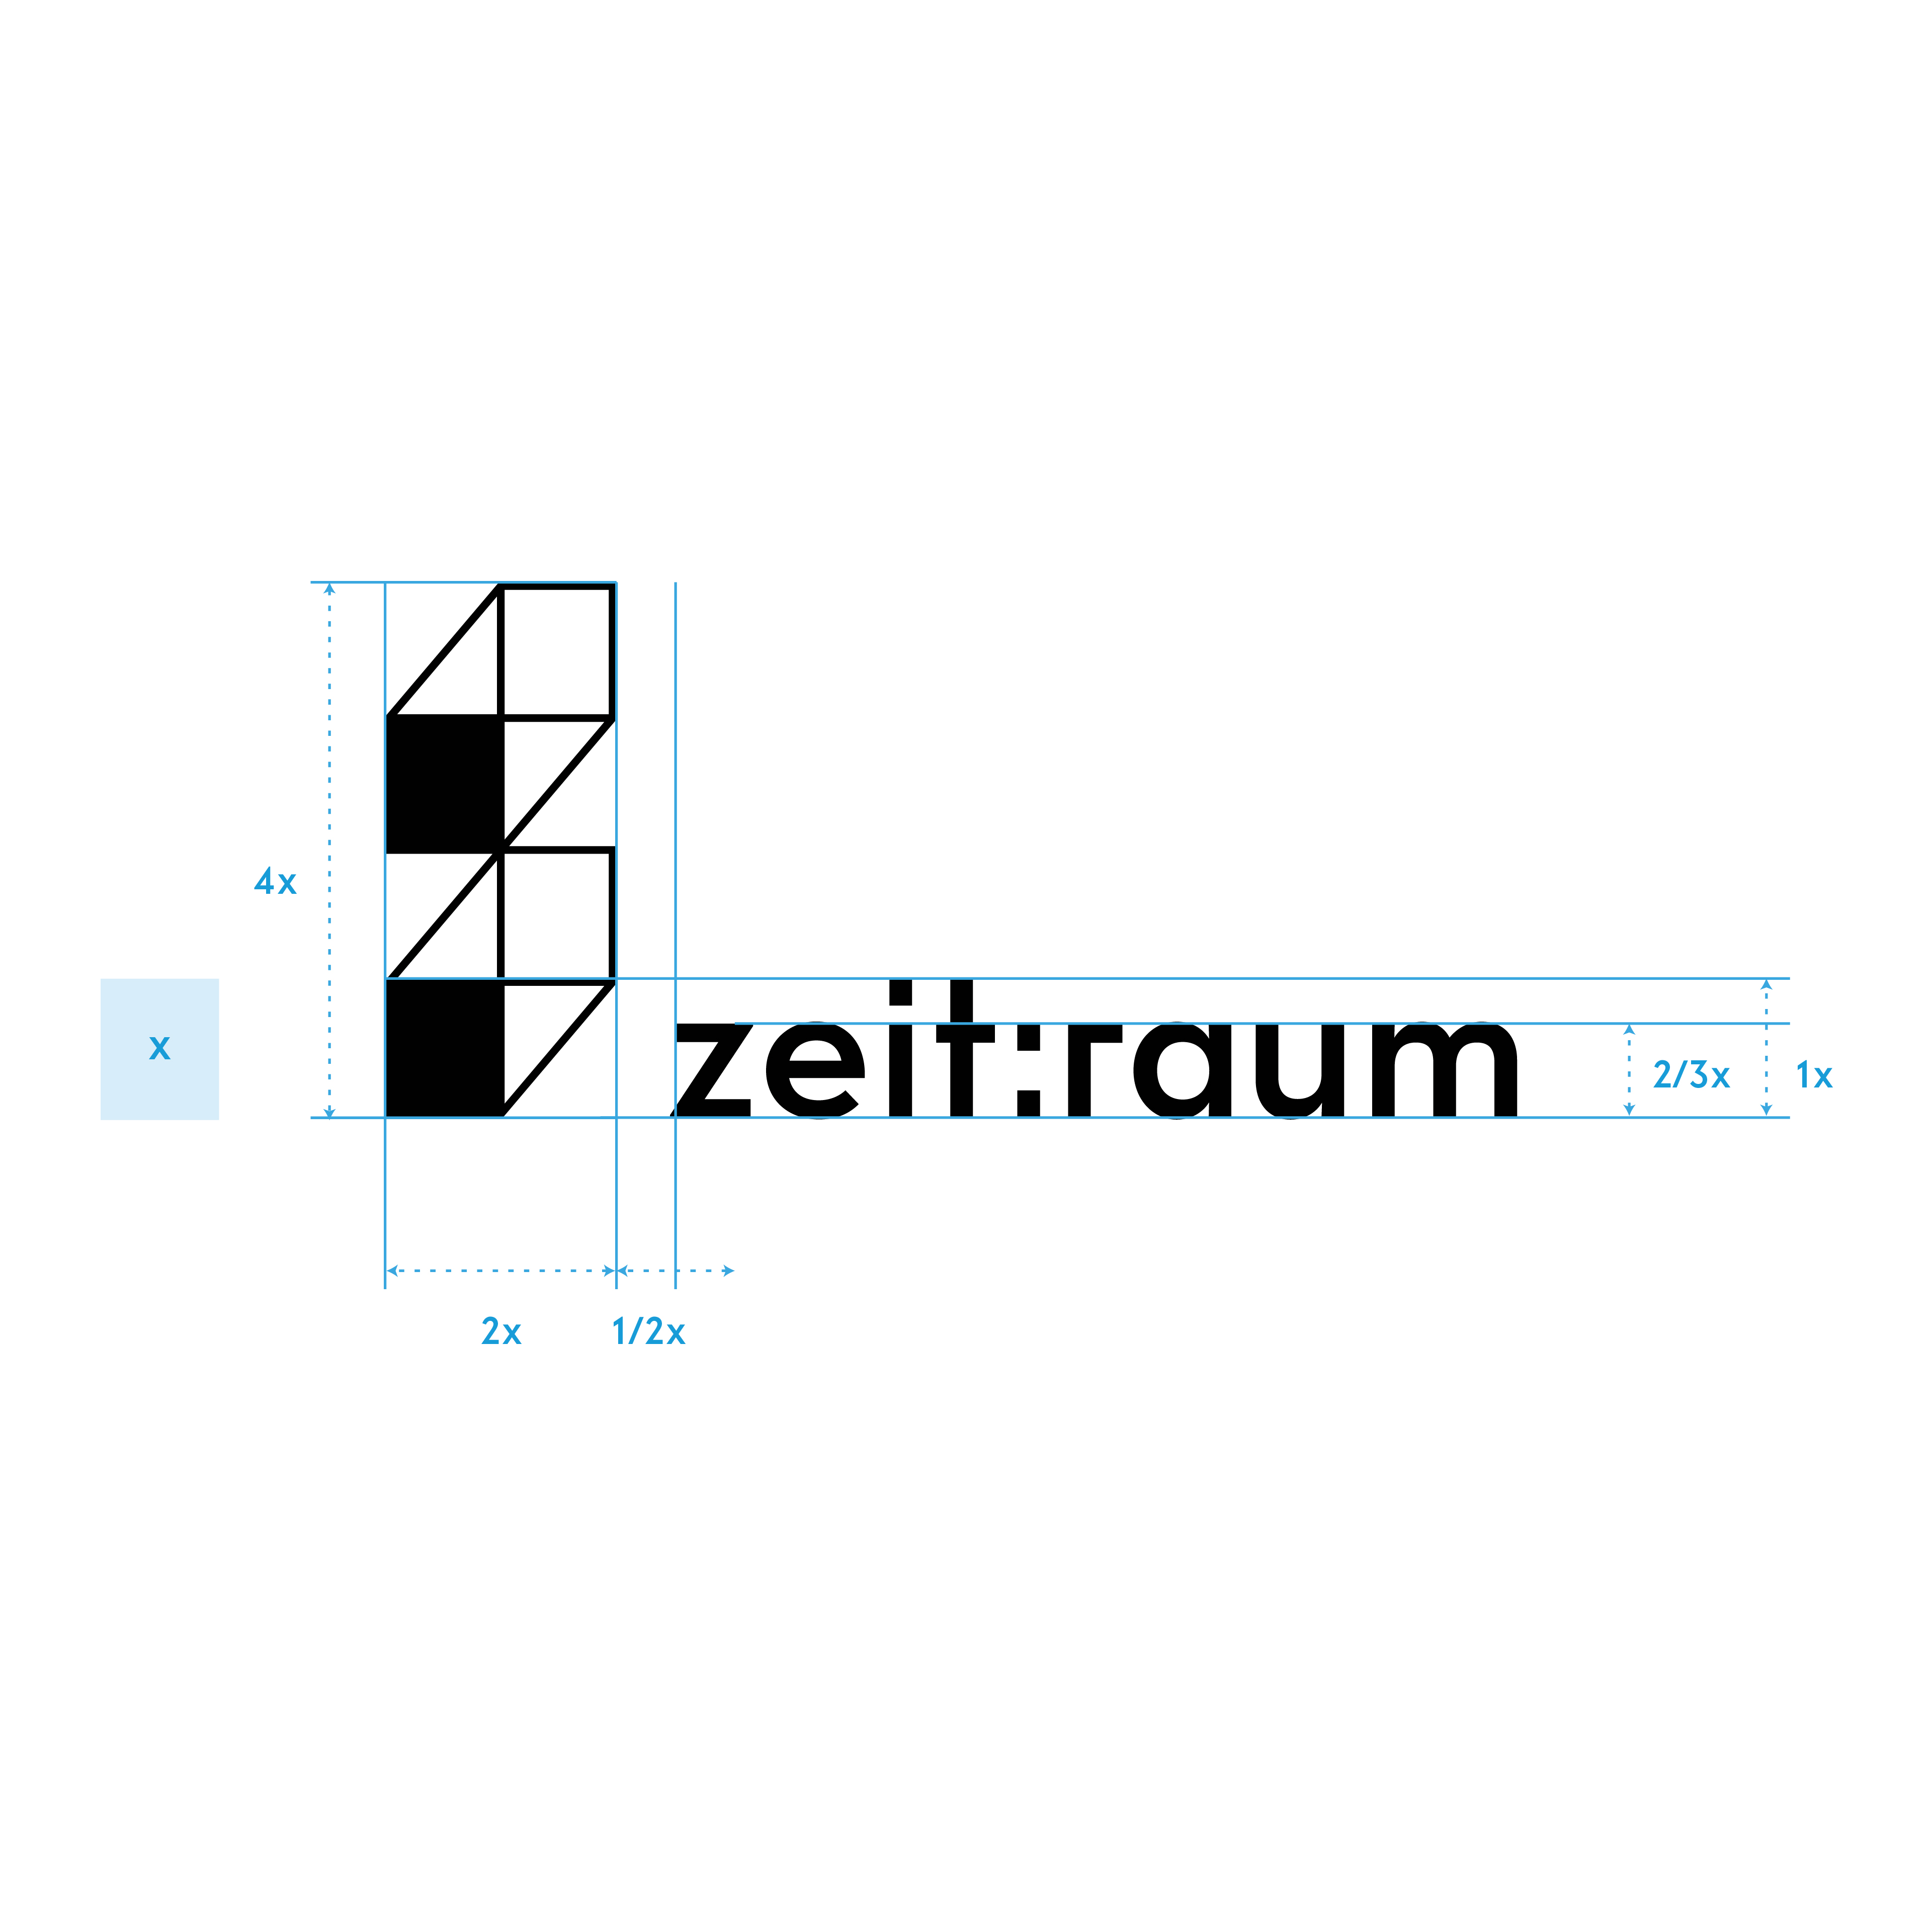 zeitraum_logo_messurement_01